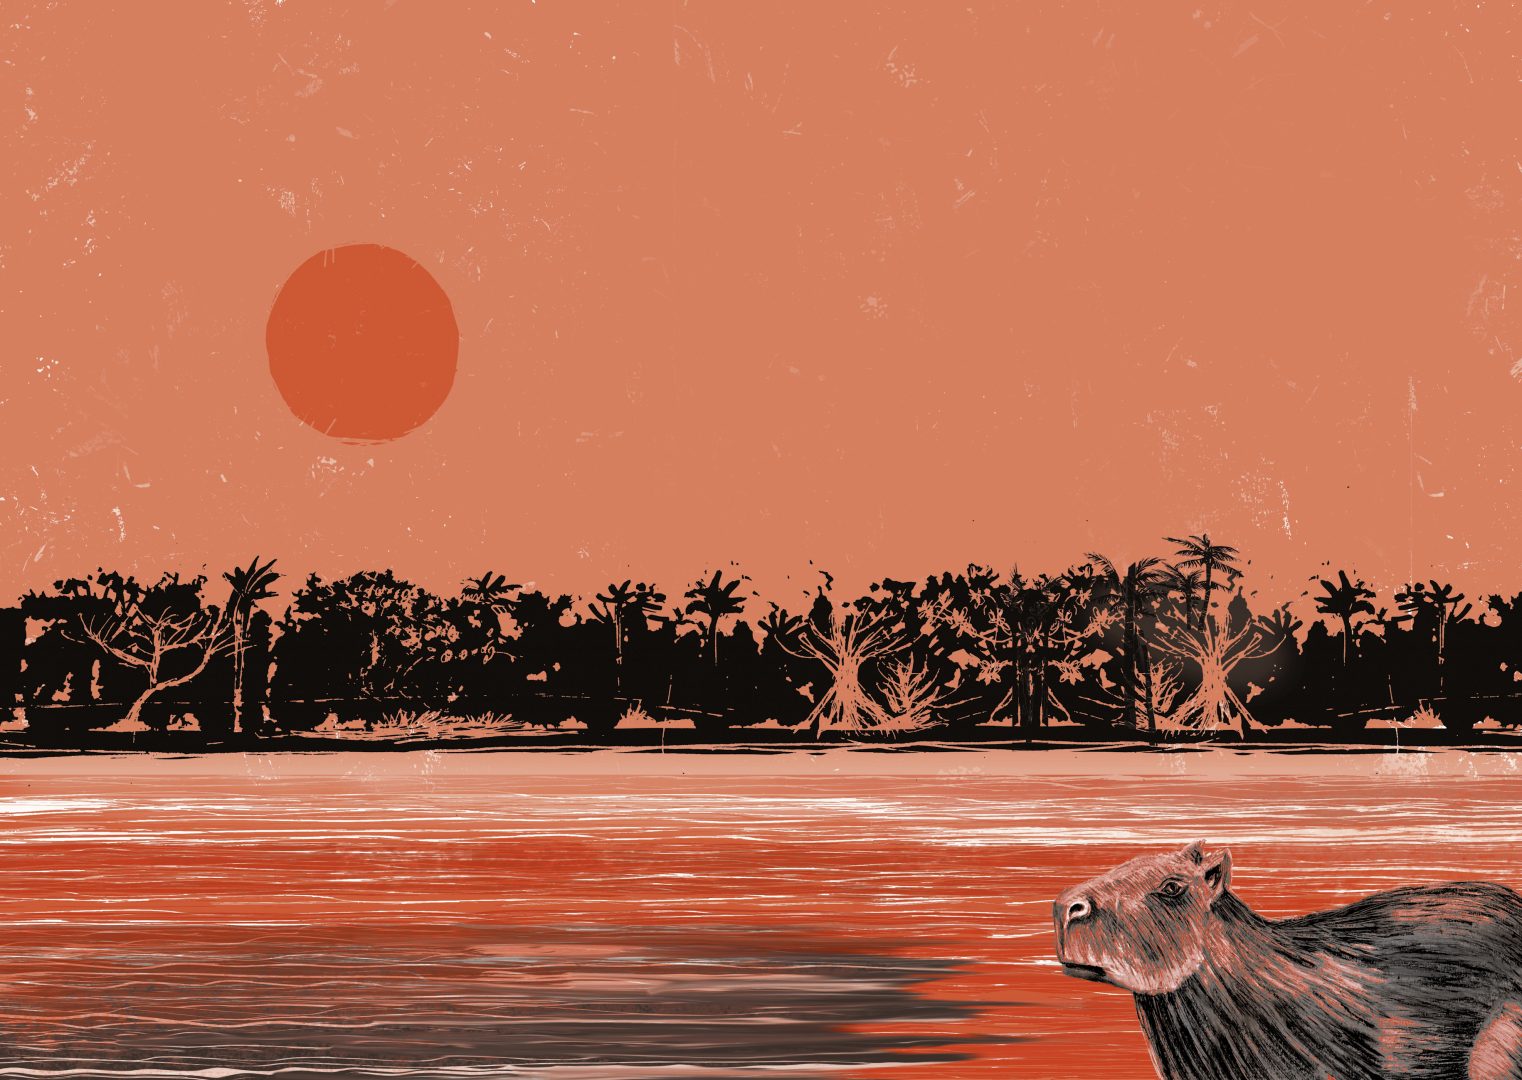 Foto de um mar com coqueiros e um sol refletindo na água, juntamente com o rosto de um animal. A foto inteira está com a cor salmão